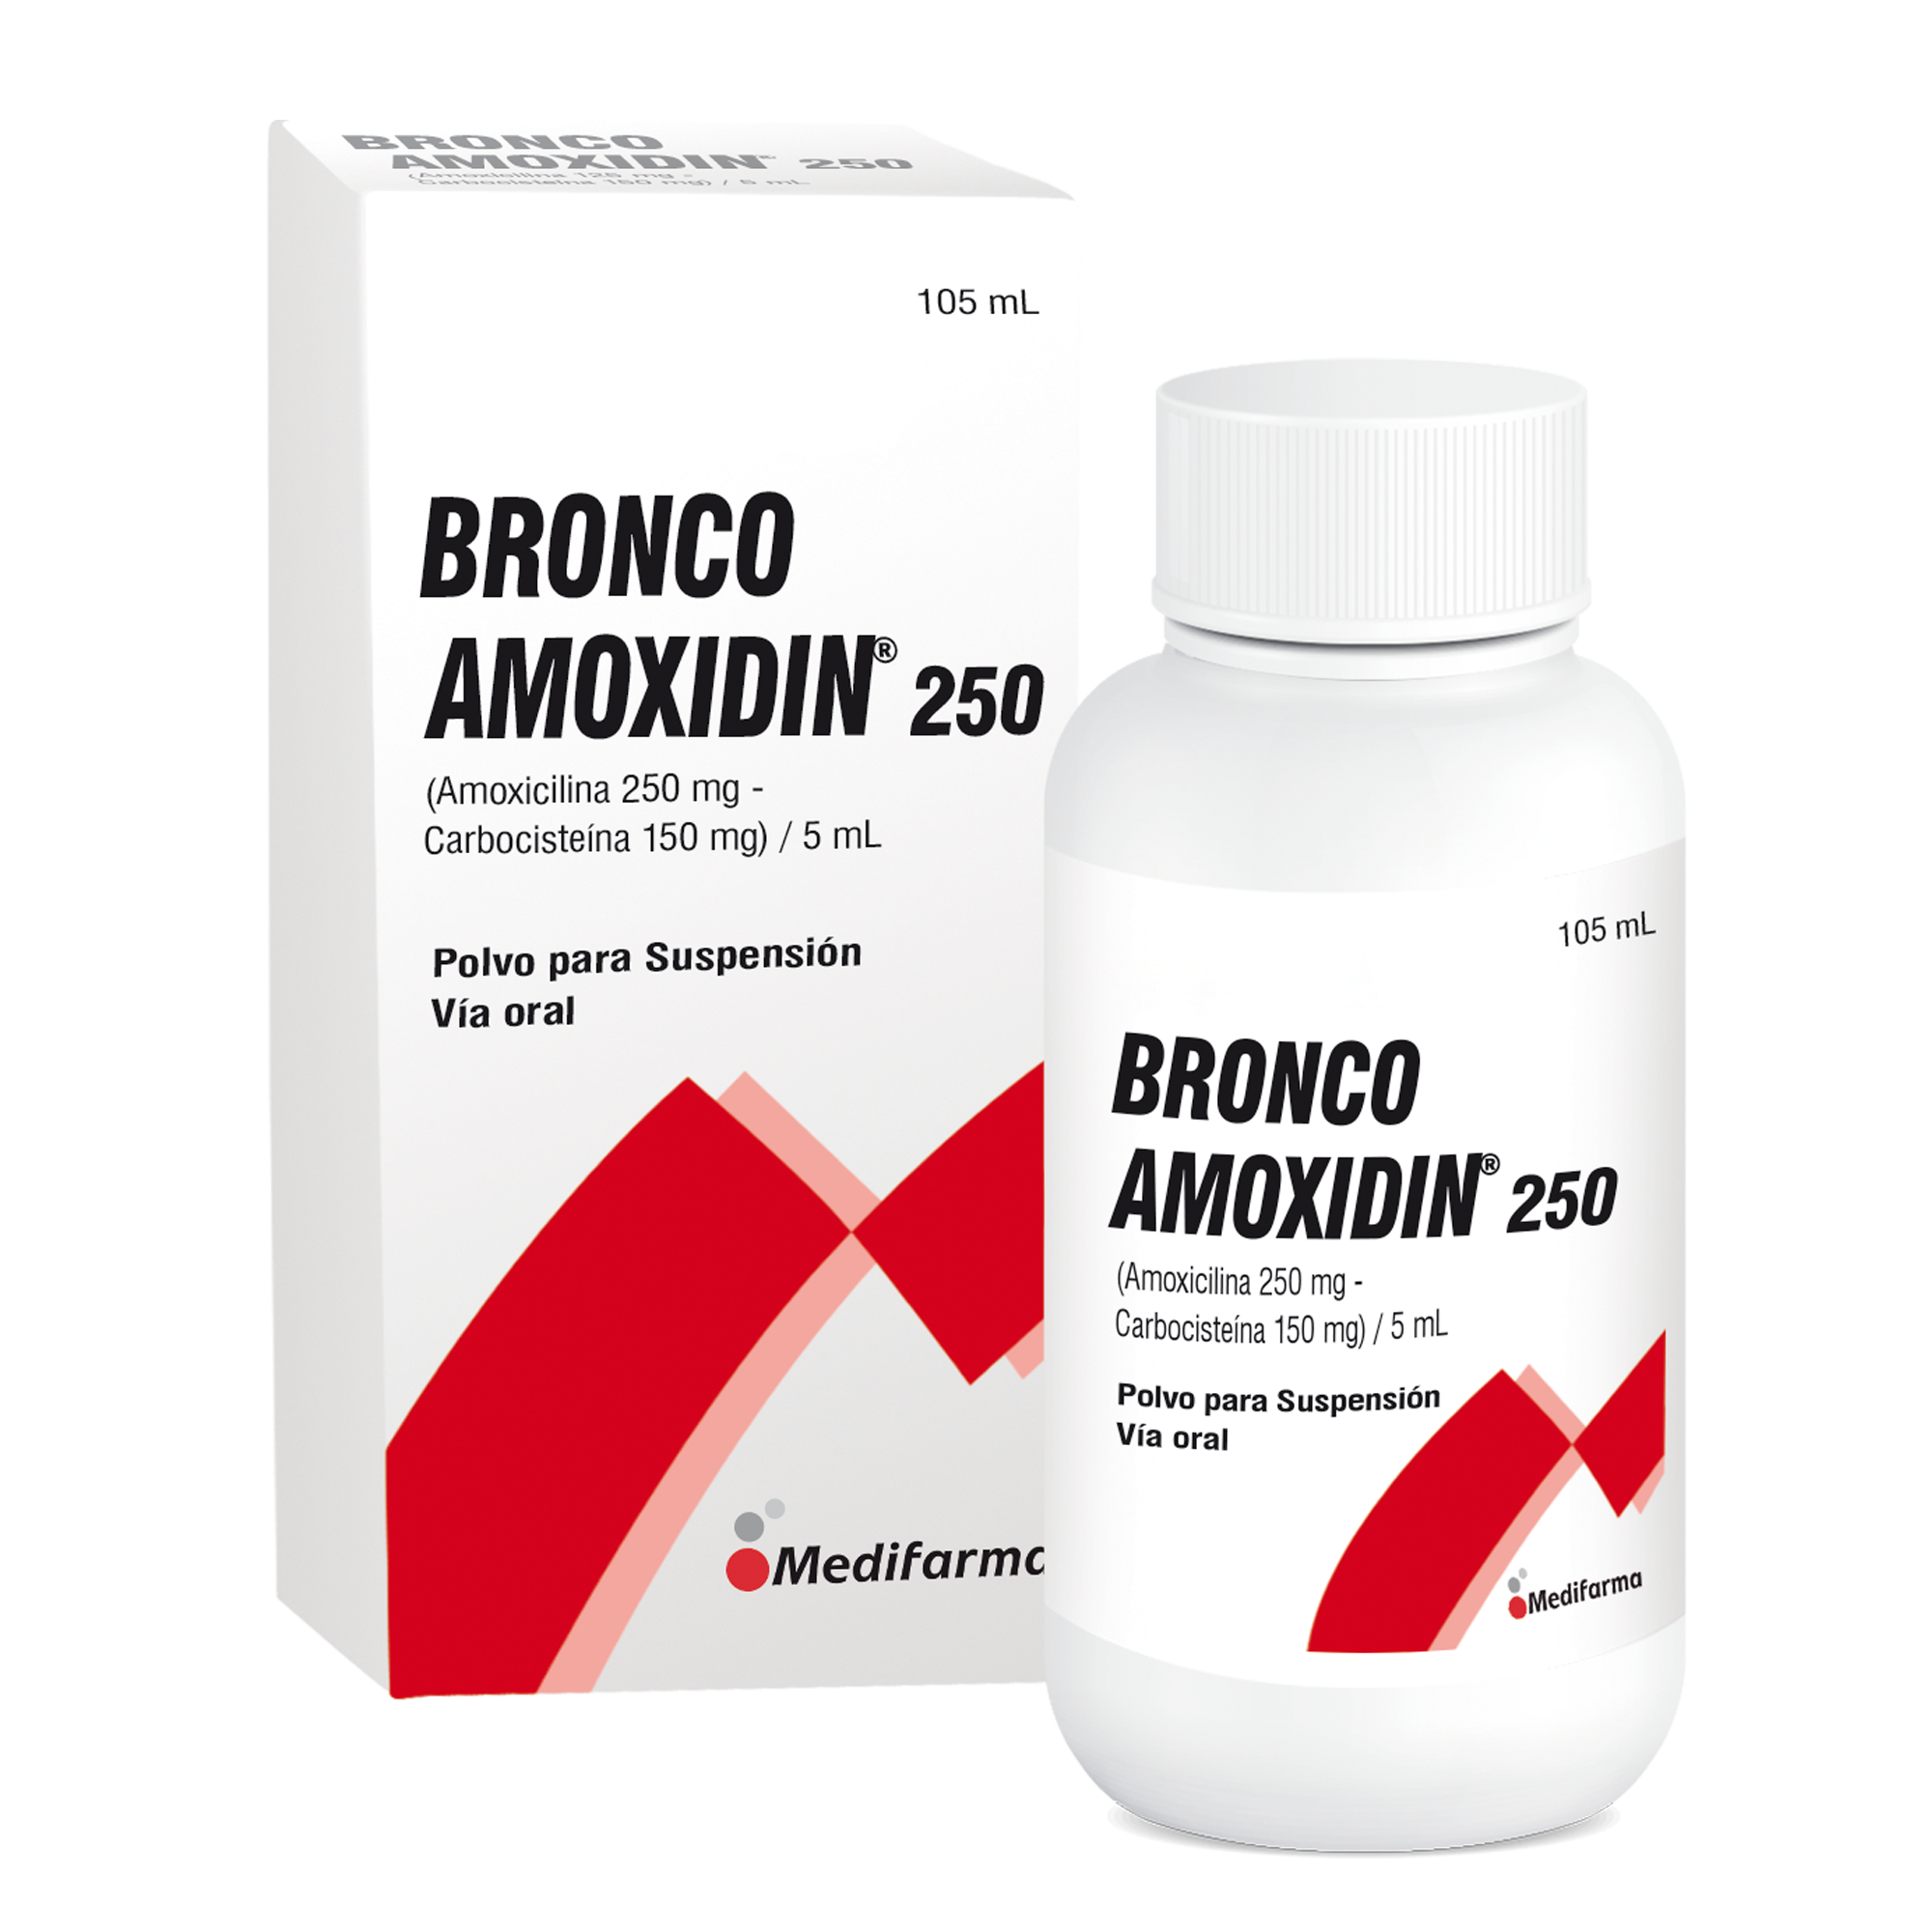 Bronco-Amoxidin 250/150Mg - Frasco 105 Ml Polvo para Suspensión Oral